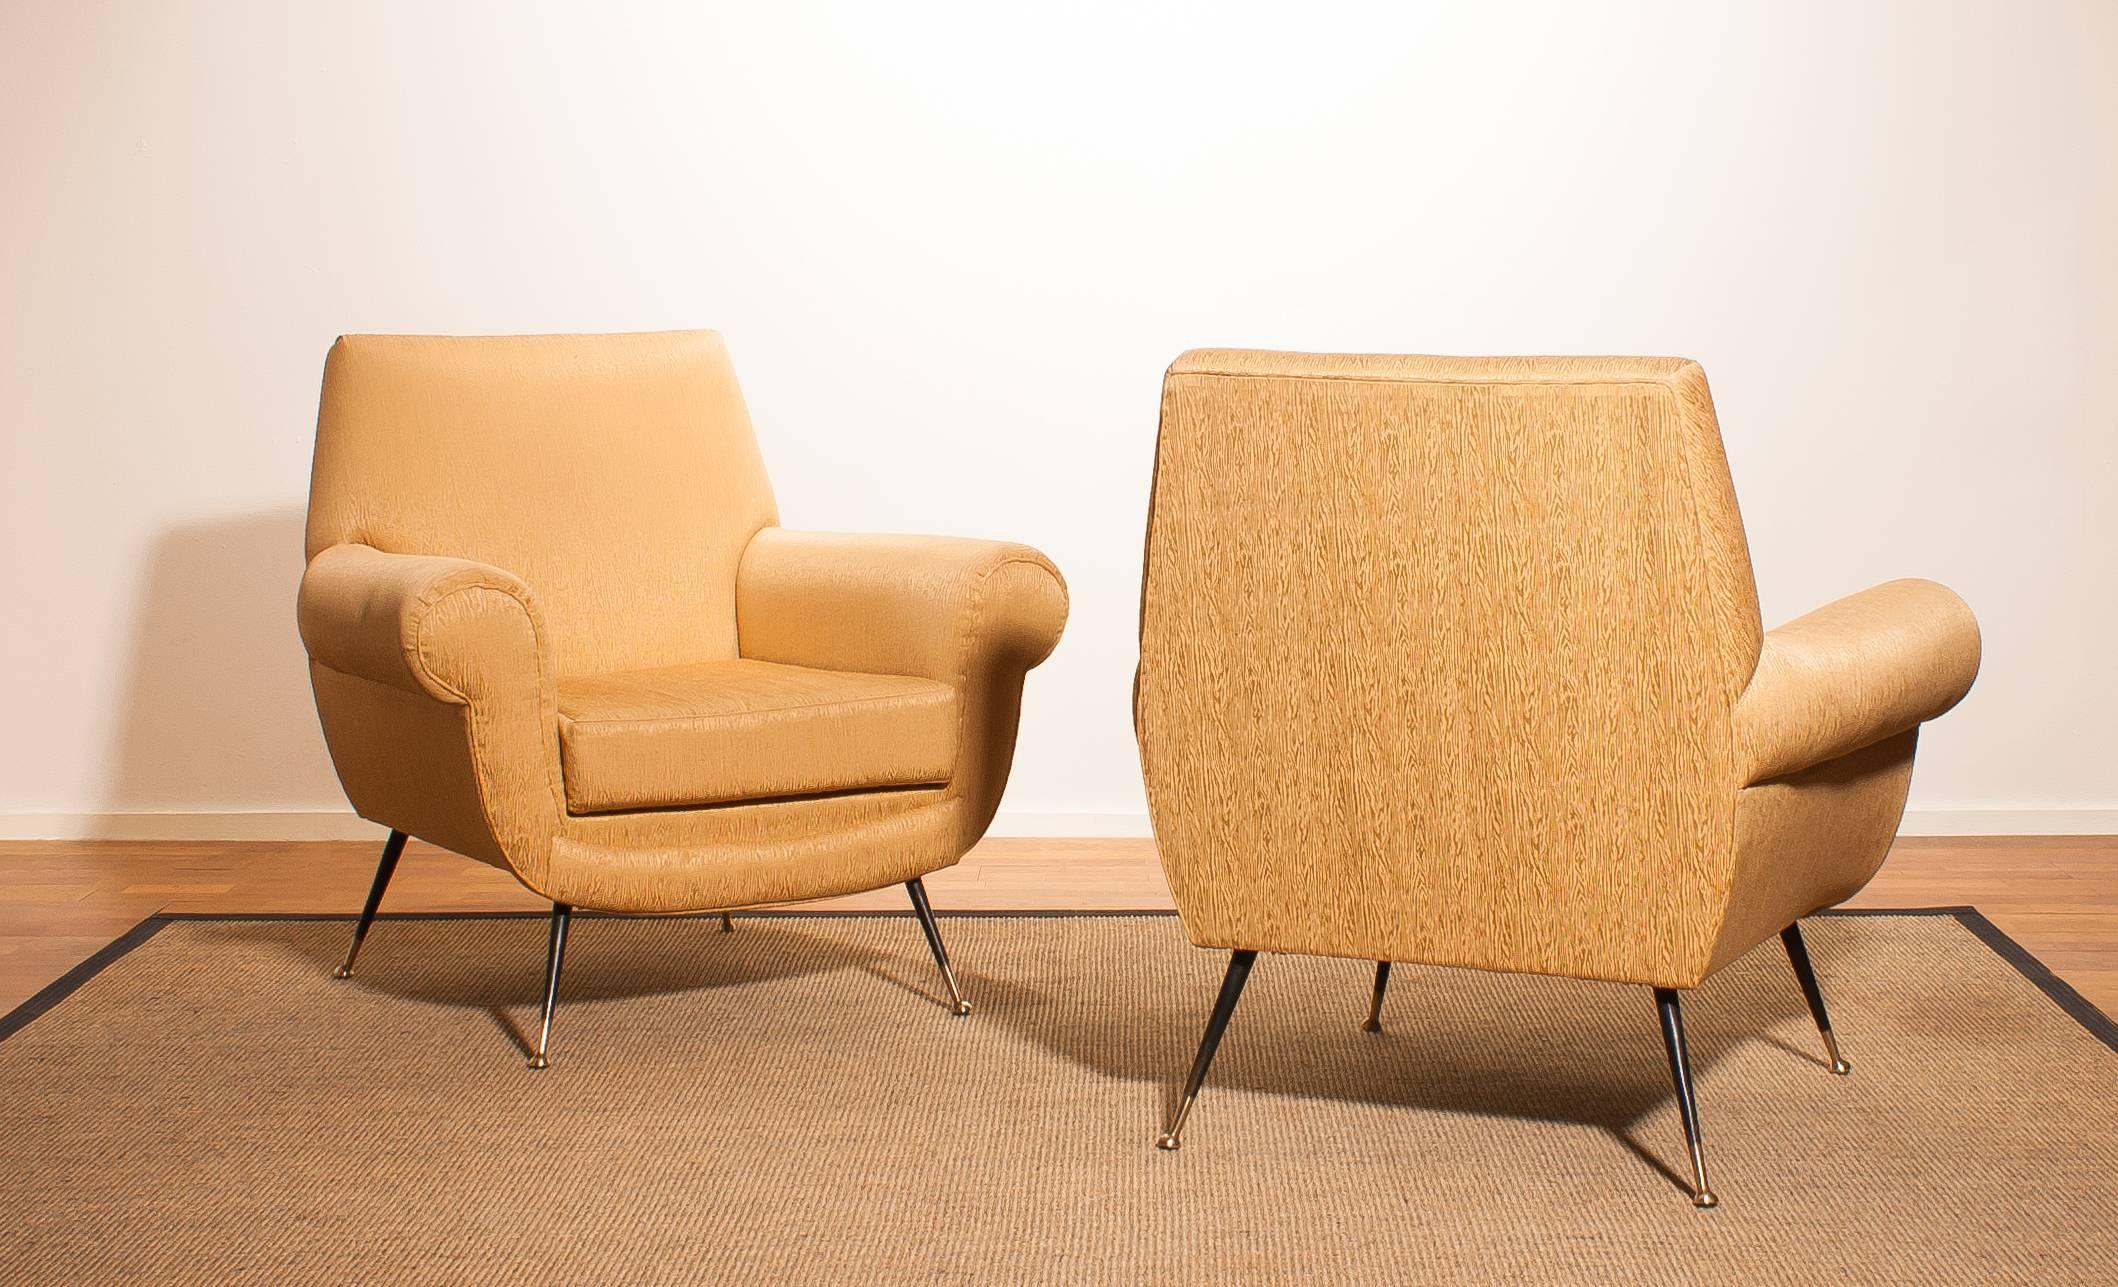 Golden Jacquard Upholstered Easy Chairs by Gigi Radice for Minotti, Brass Legs. 2